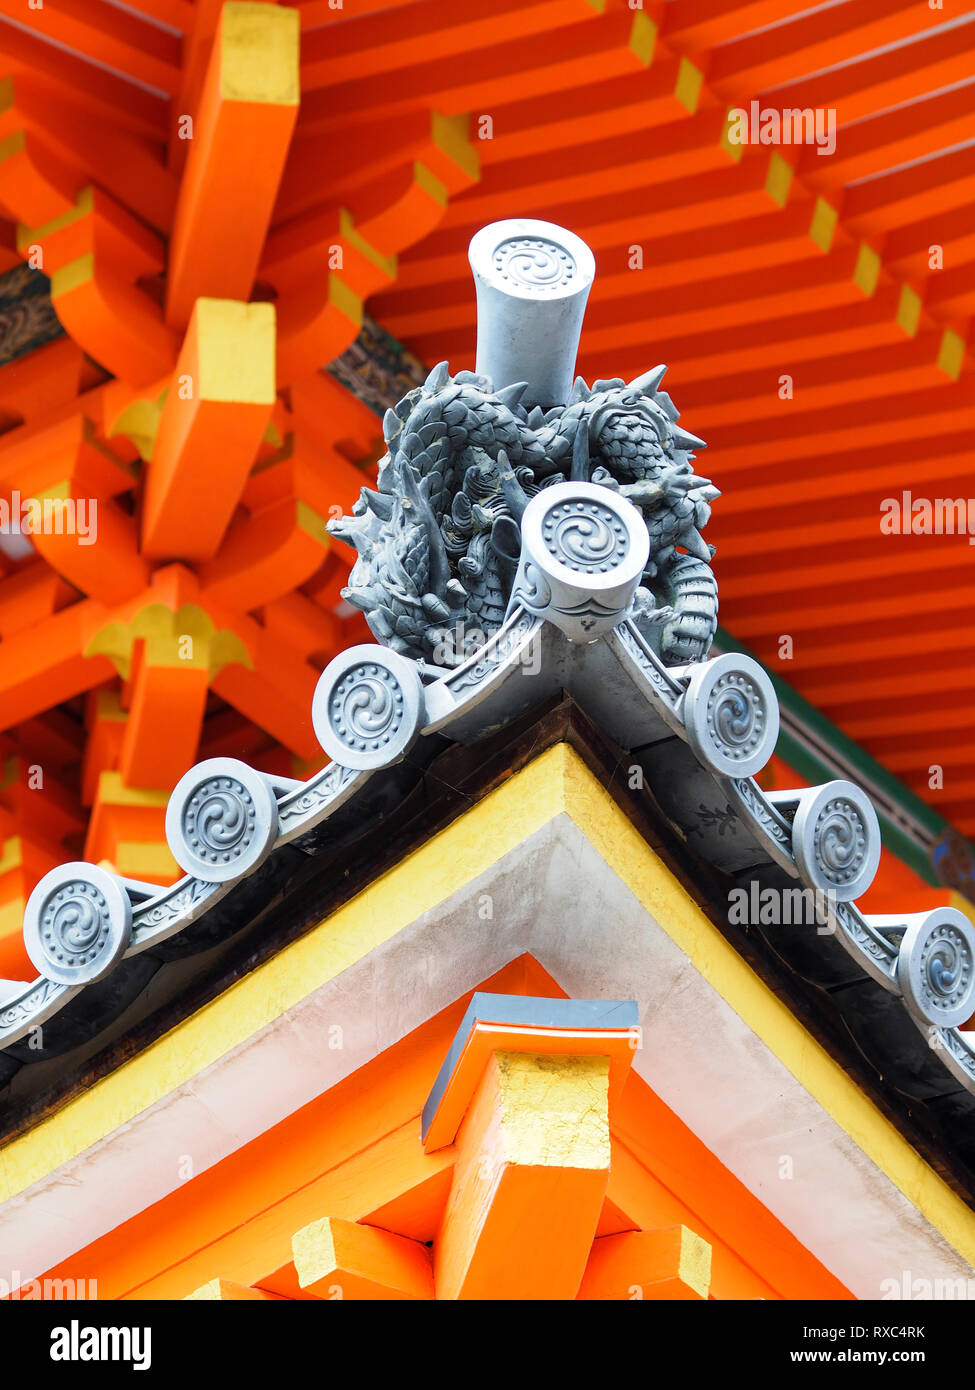 Kyoto, Giappone - 15 OTT 2018: ricche decorazioni e dettagli architettonici di una pagoda giapponese padiglione in un santuario buddista Foto Stock